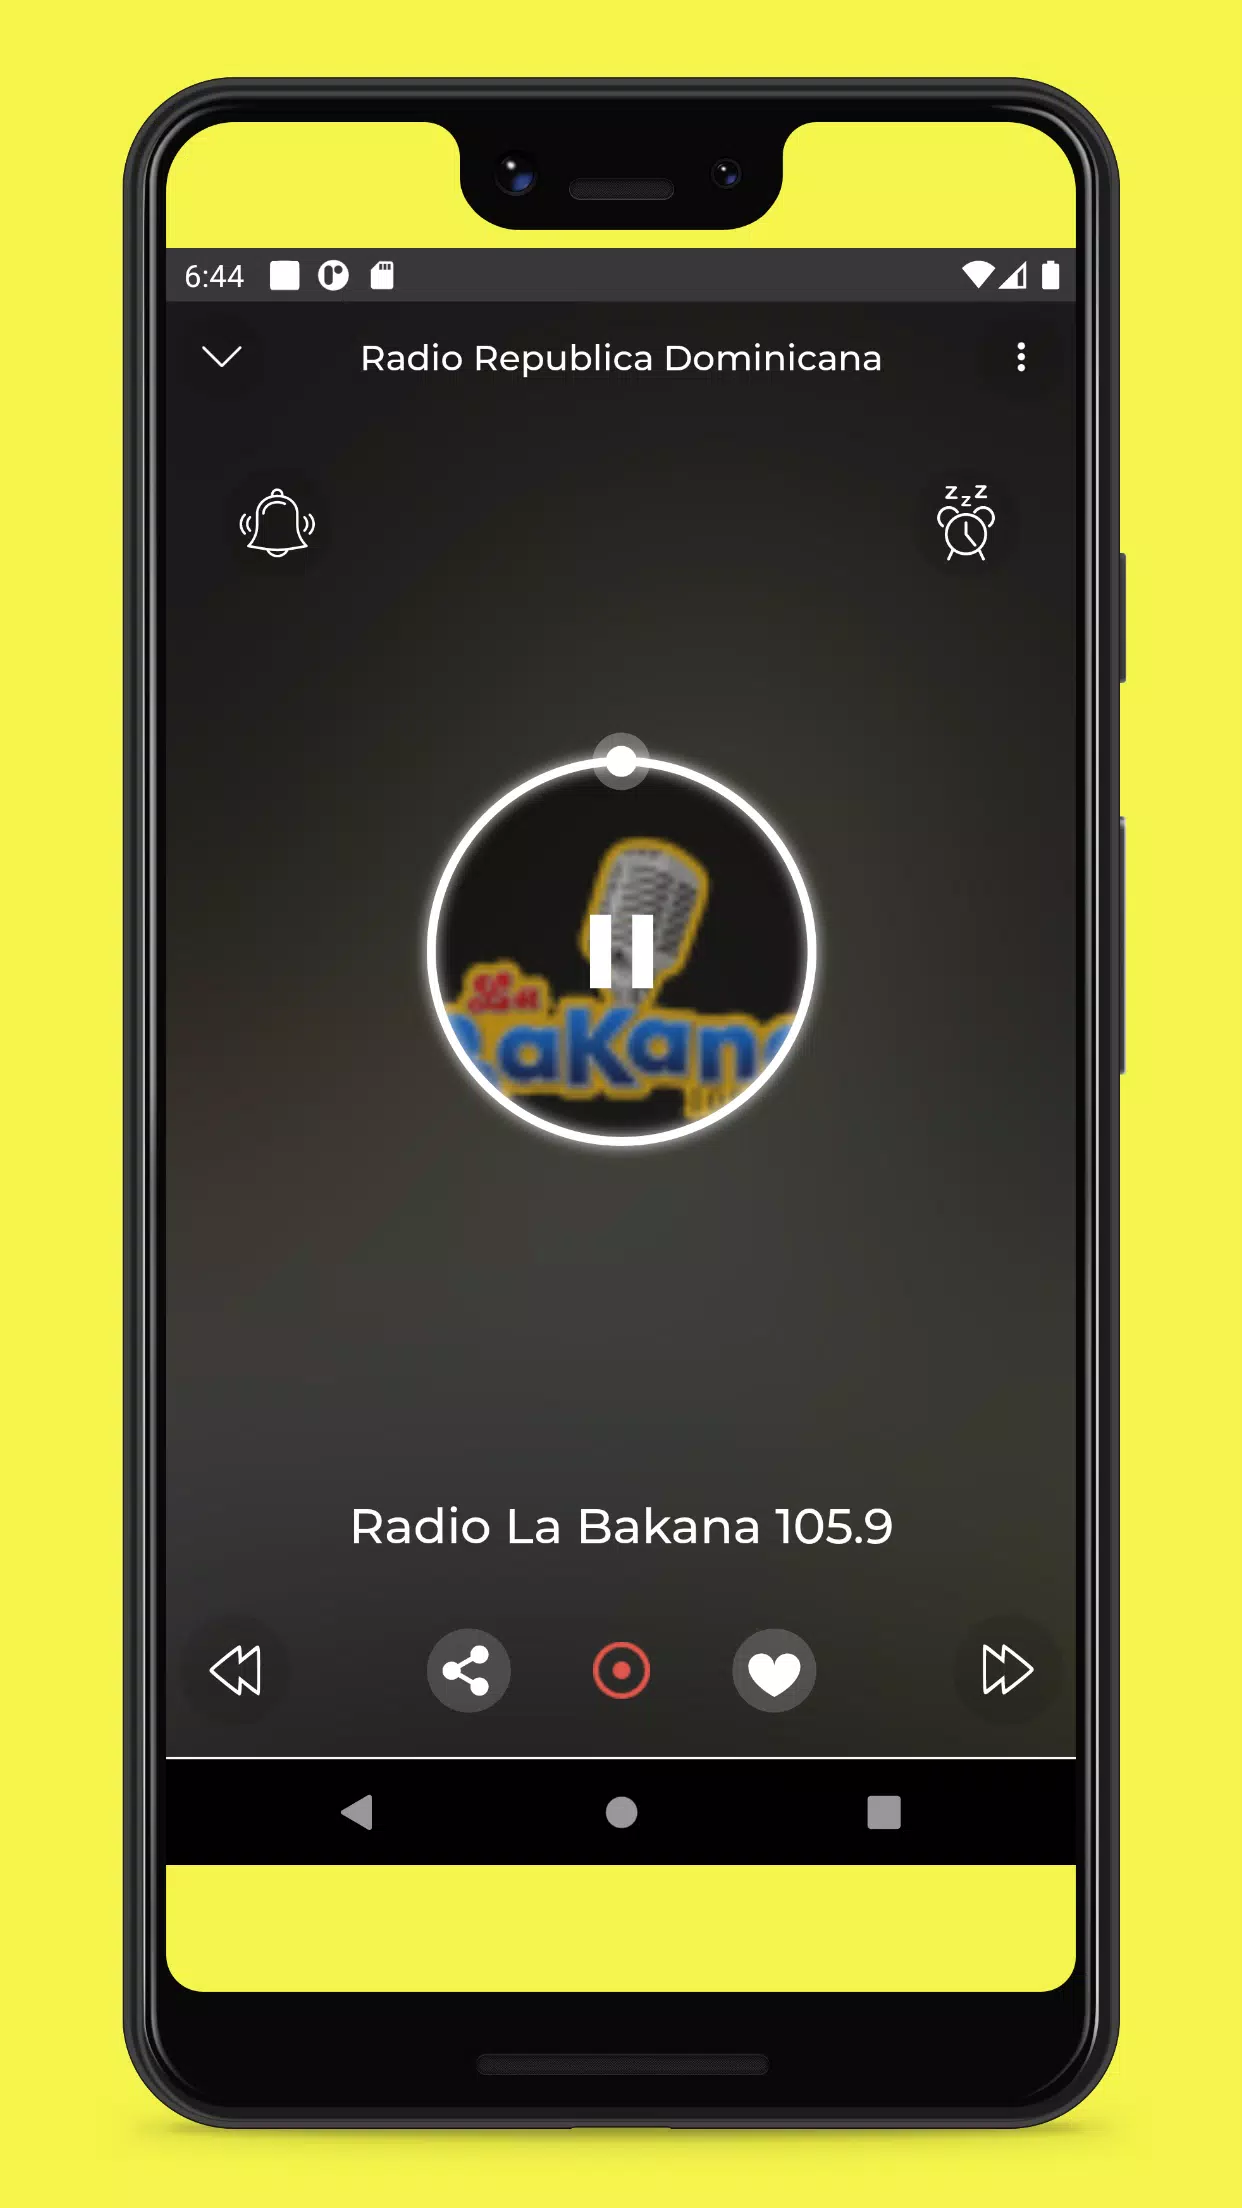 Android용 Radios de Republica Dominicana - Emisoras de Radio APK 다운로드